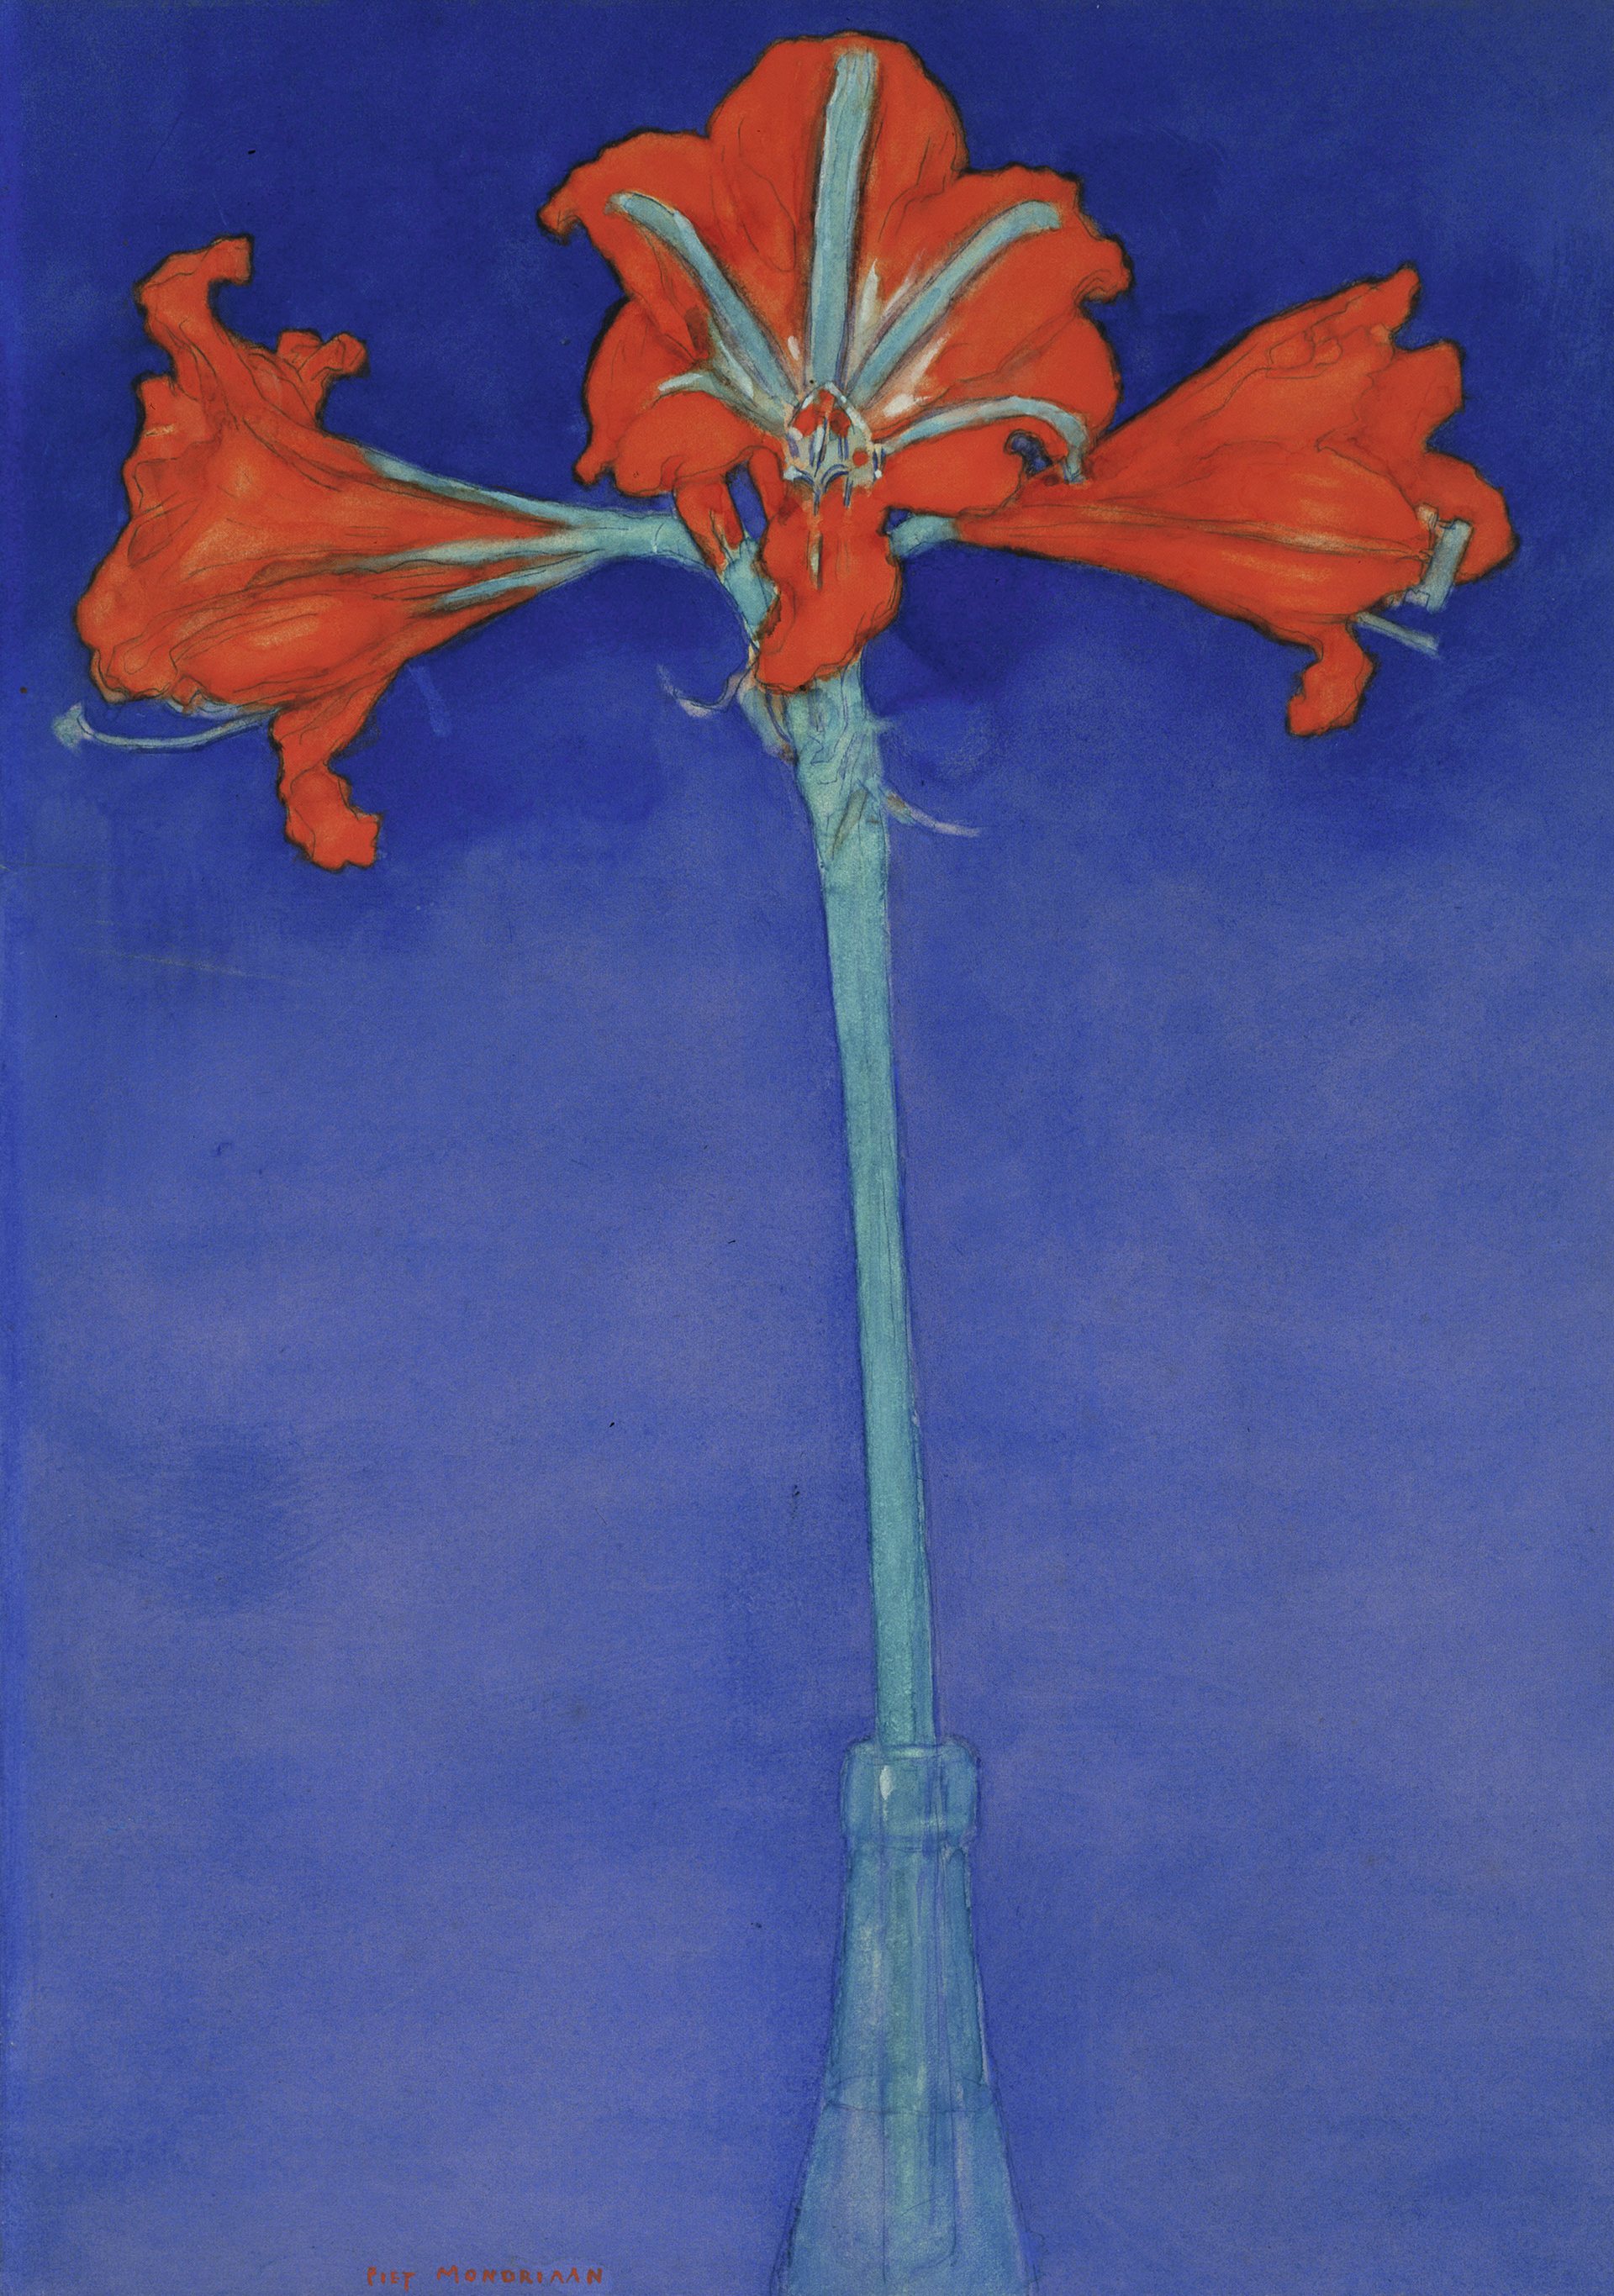 Rode Amaryllis met Blauwe Achtergrond by Piet Mondrian - 1907 - 46,5 x 33 cm 